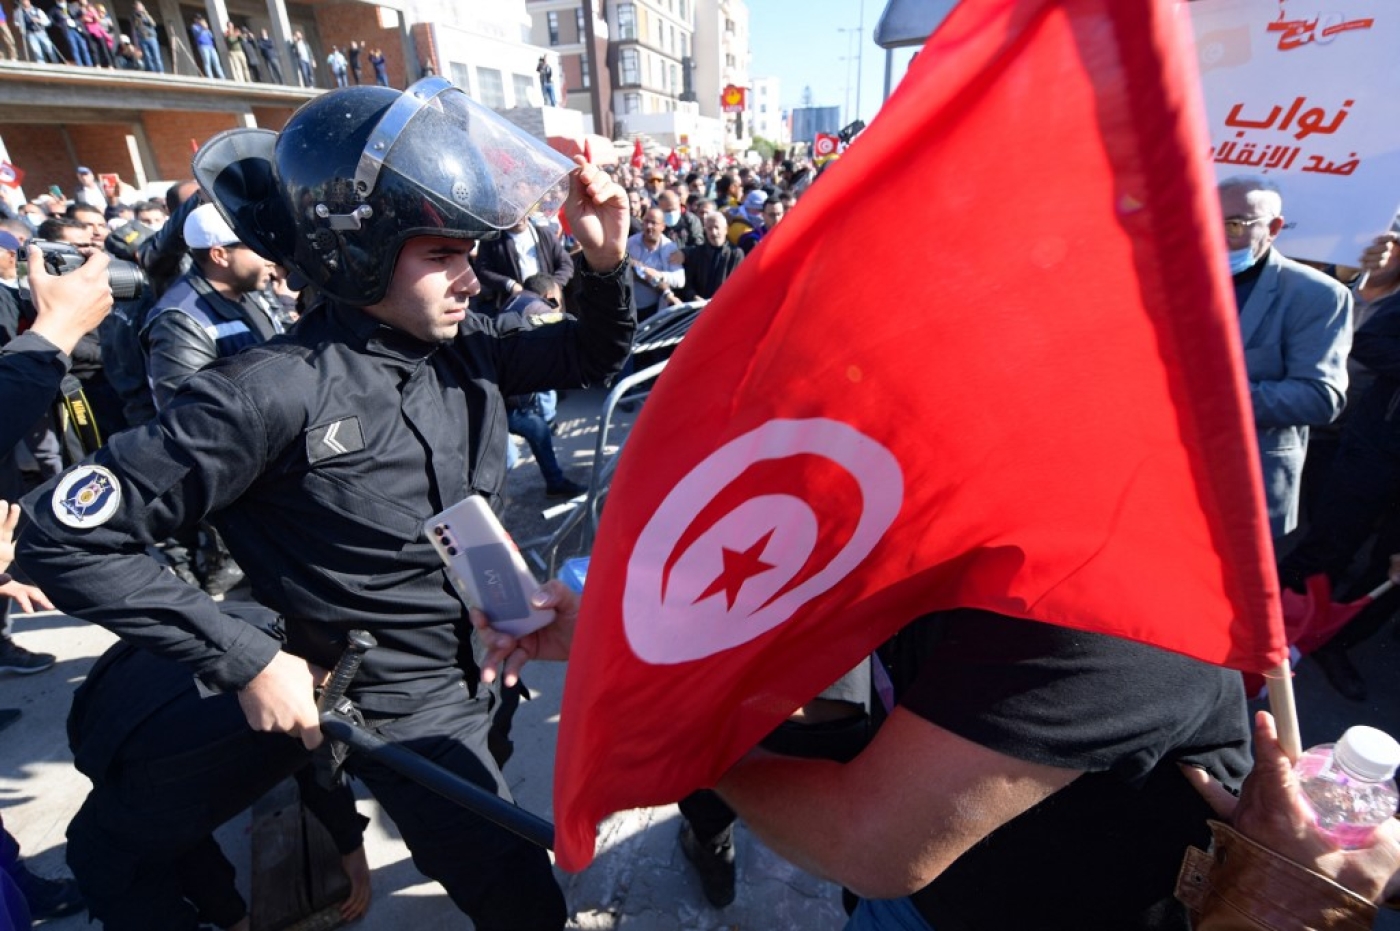 Des protestataires se retrouvent confrontés aux forces de l’ordre lors d’une manifestation contre Kais Saied à Tunis, le 14 novembre 2021 (AFP/Fethi Belaïd)